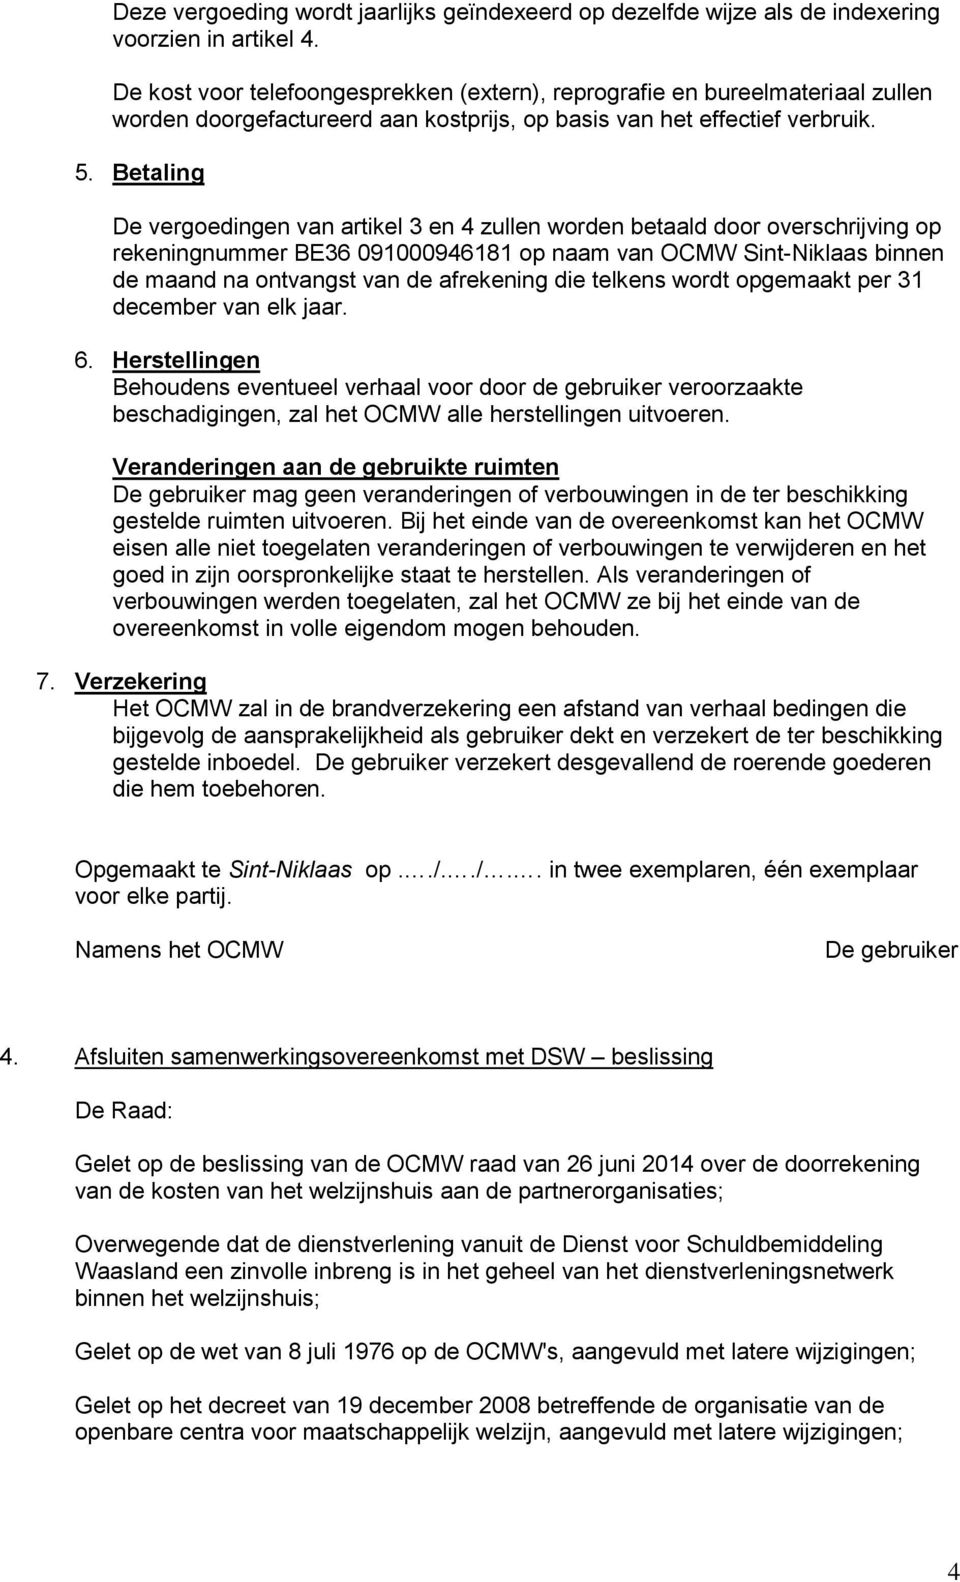 Betaling De vergoedingen van artikel 3 en 4 zullen worden betaald door overschrijving op rekeningnummer BE36 091000946181 op naam van OCMW Sint-Niklaas binnen de maand na ontvangst van de afrekening